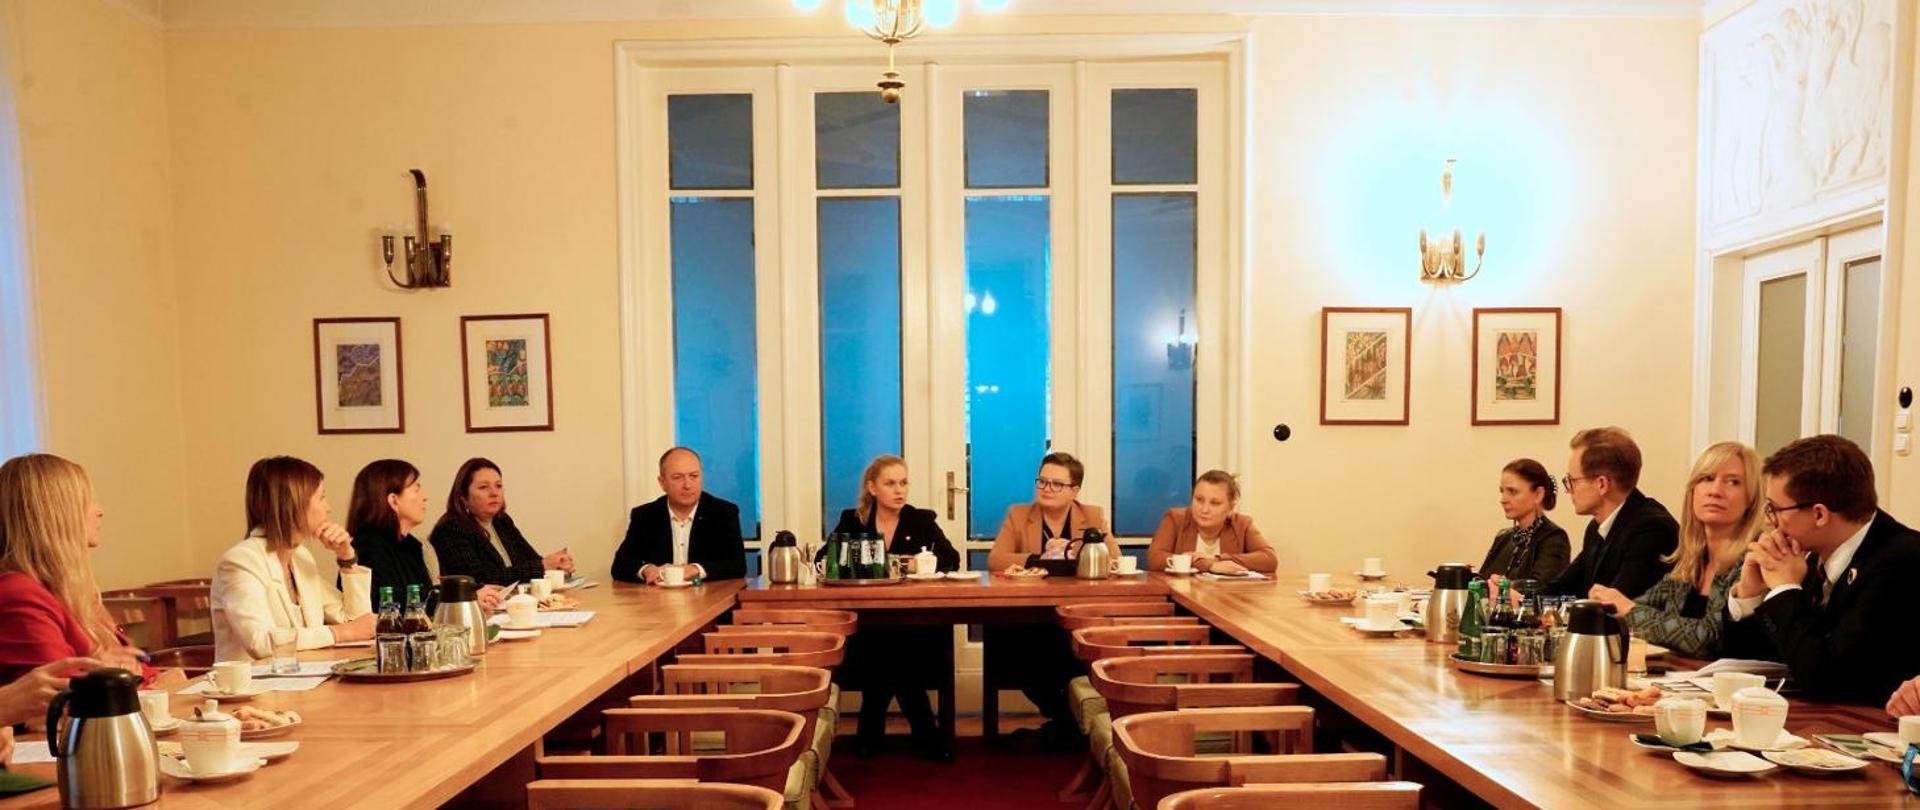 Na zdjęciu minister Barbara Nowacka rozmawia z kilkunastoma osobami, wszyscy siedzą przy stołach, z tyłu duże okno balkonowe, na ścianie wiszą obrazy.